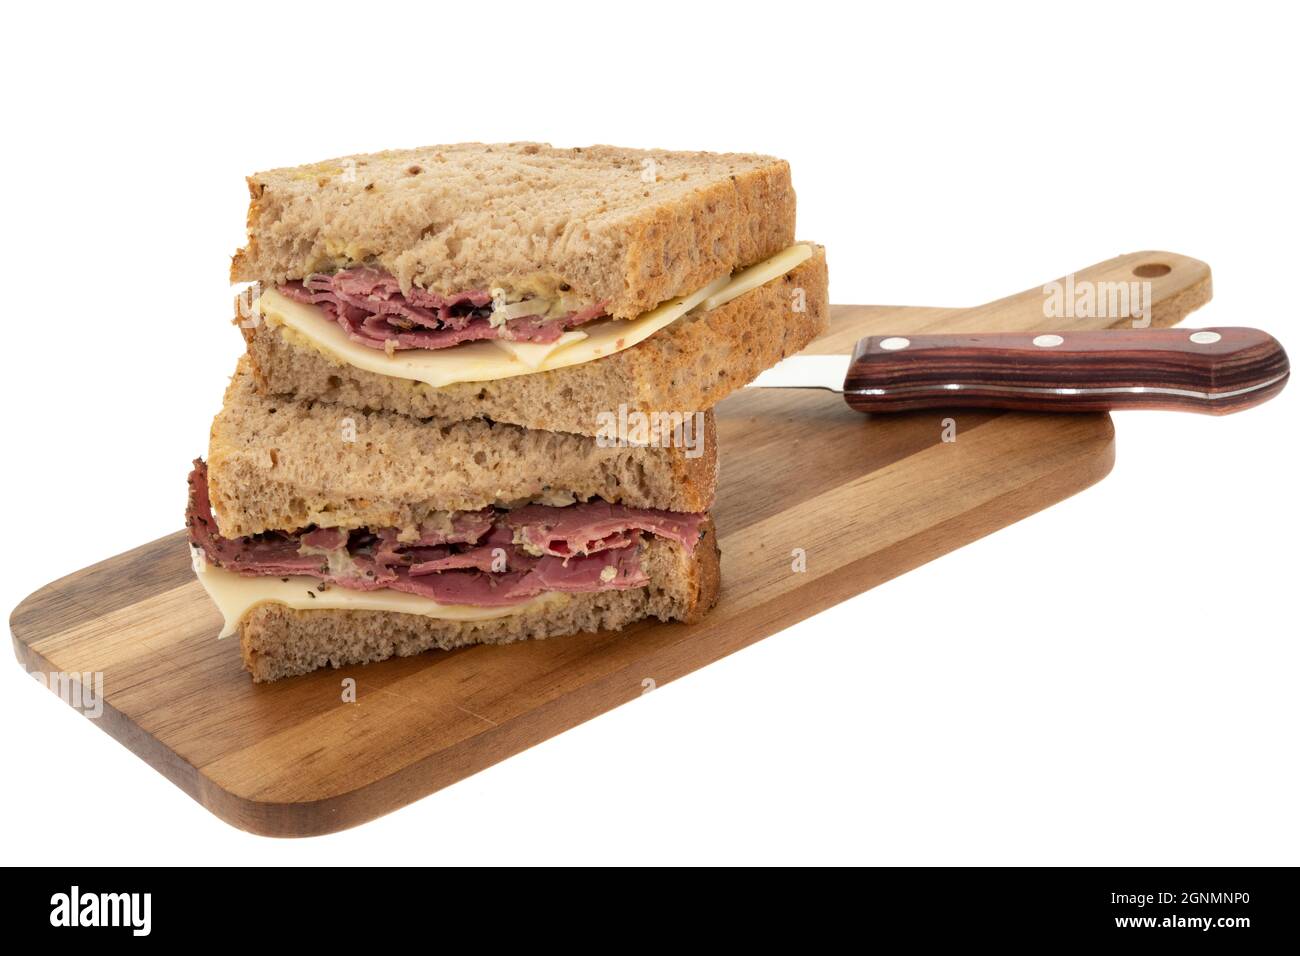 Sandwich au jambon pastrami et au fromage Emmental - fond blanc Banque D'Images